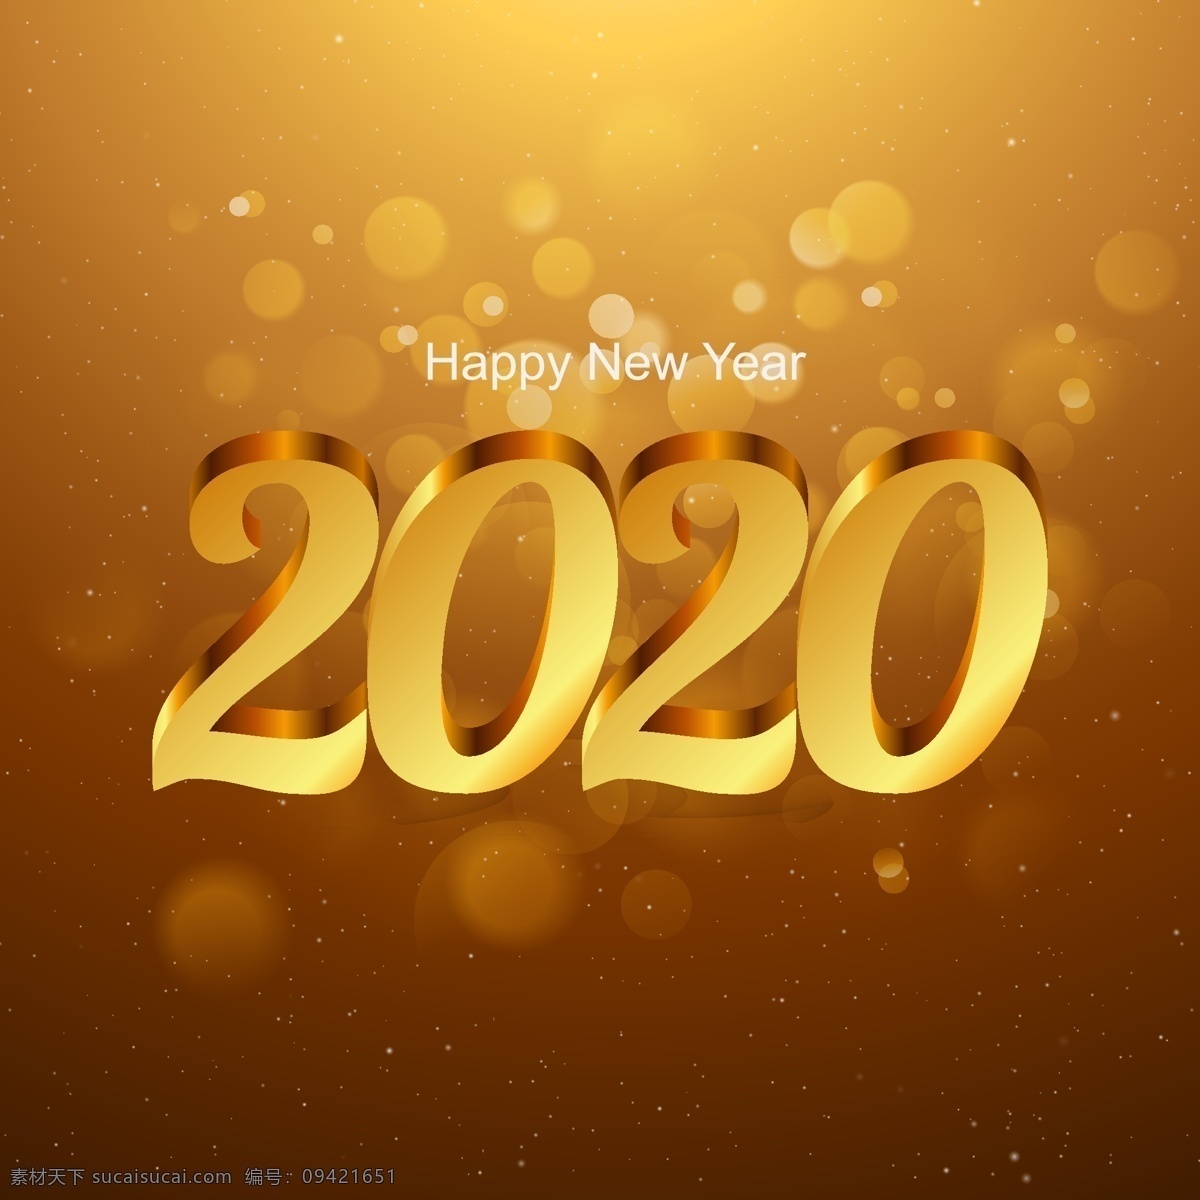 立体 金色 2020 艺术 字 矢量 2019 艺术字 光晕 新年快乐 happy new year 矢量素材